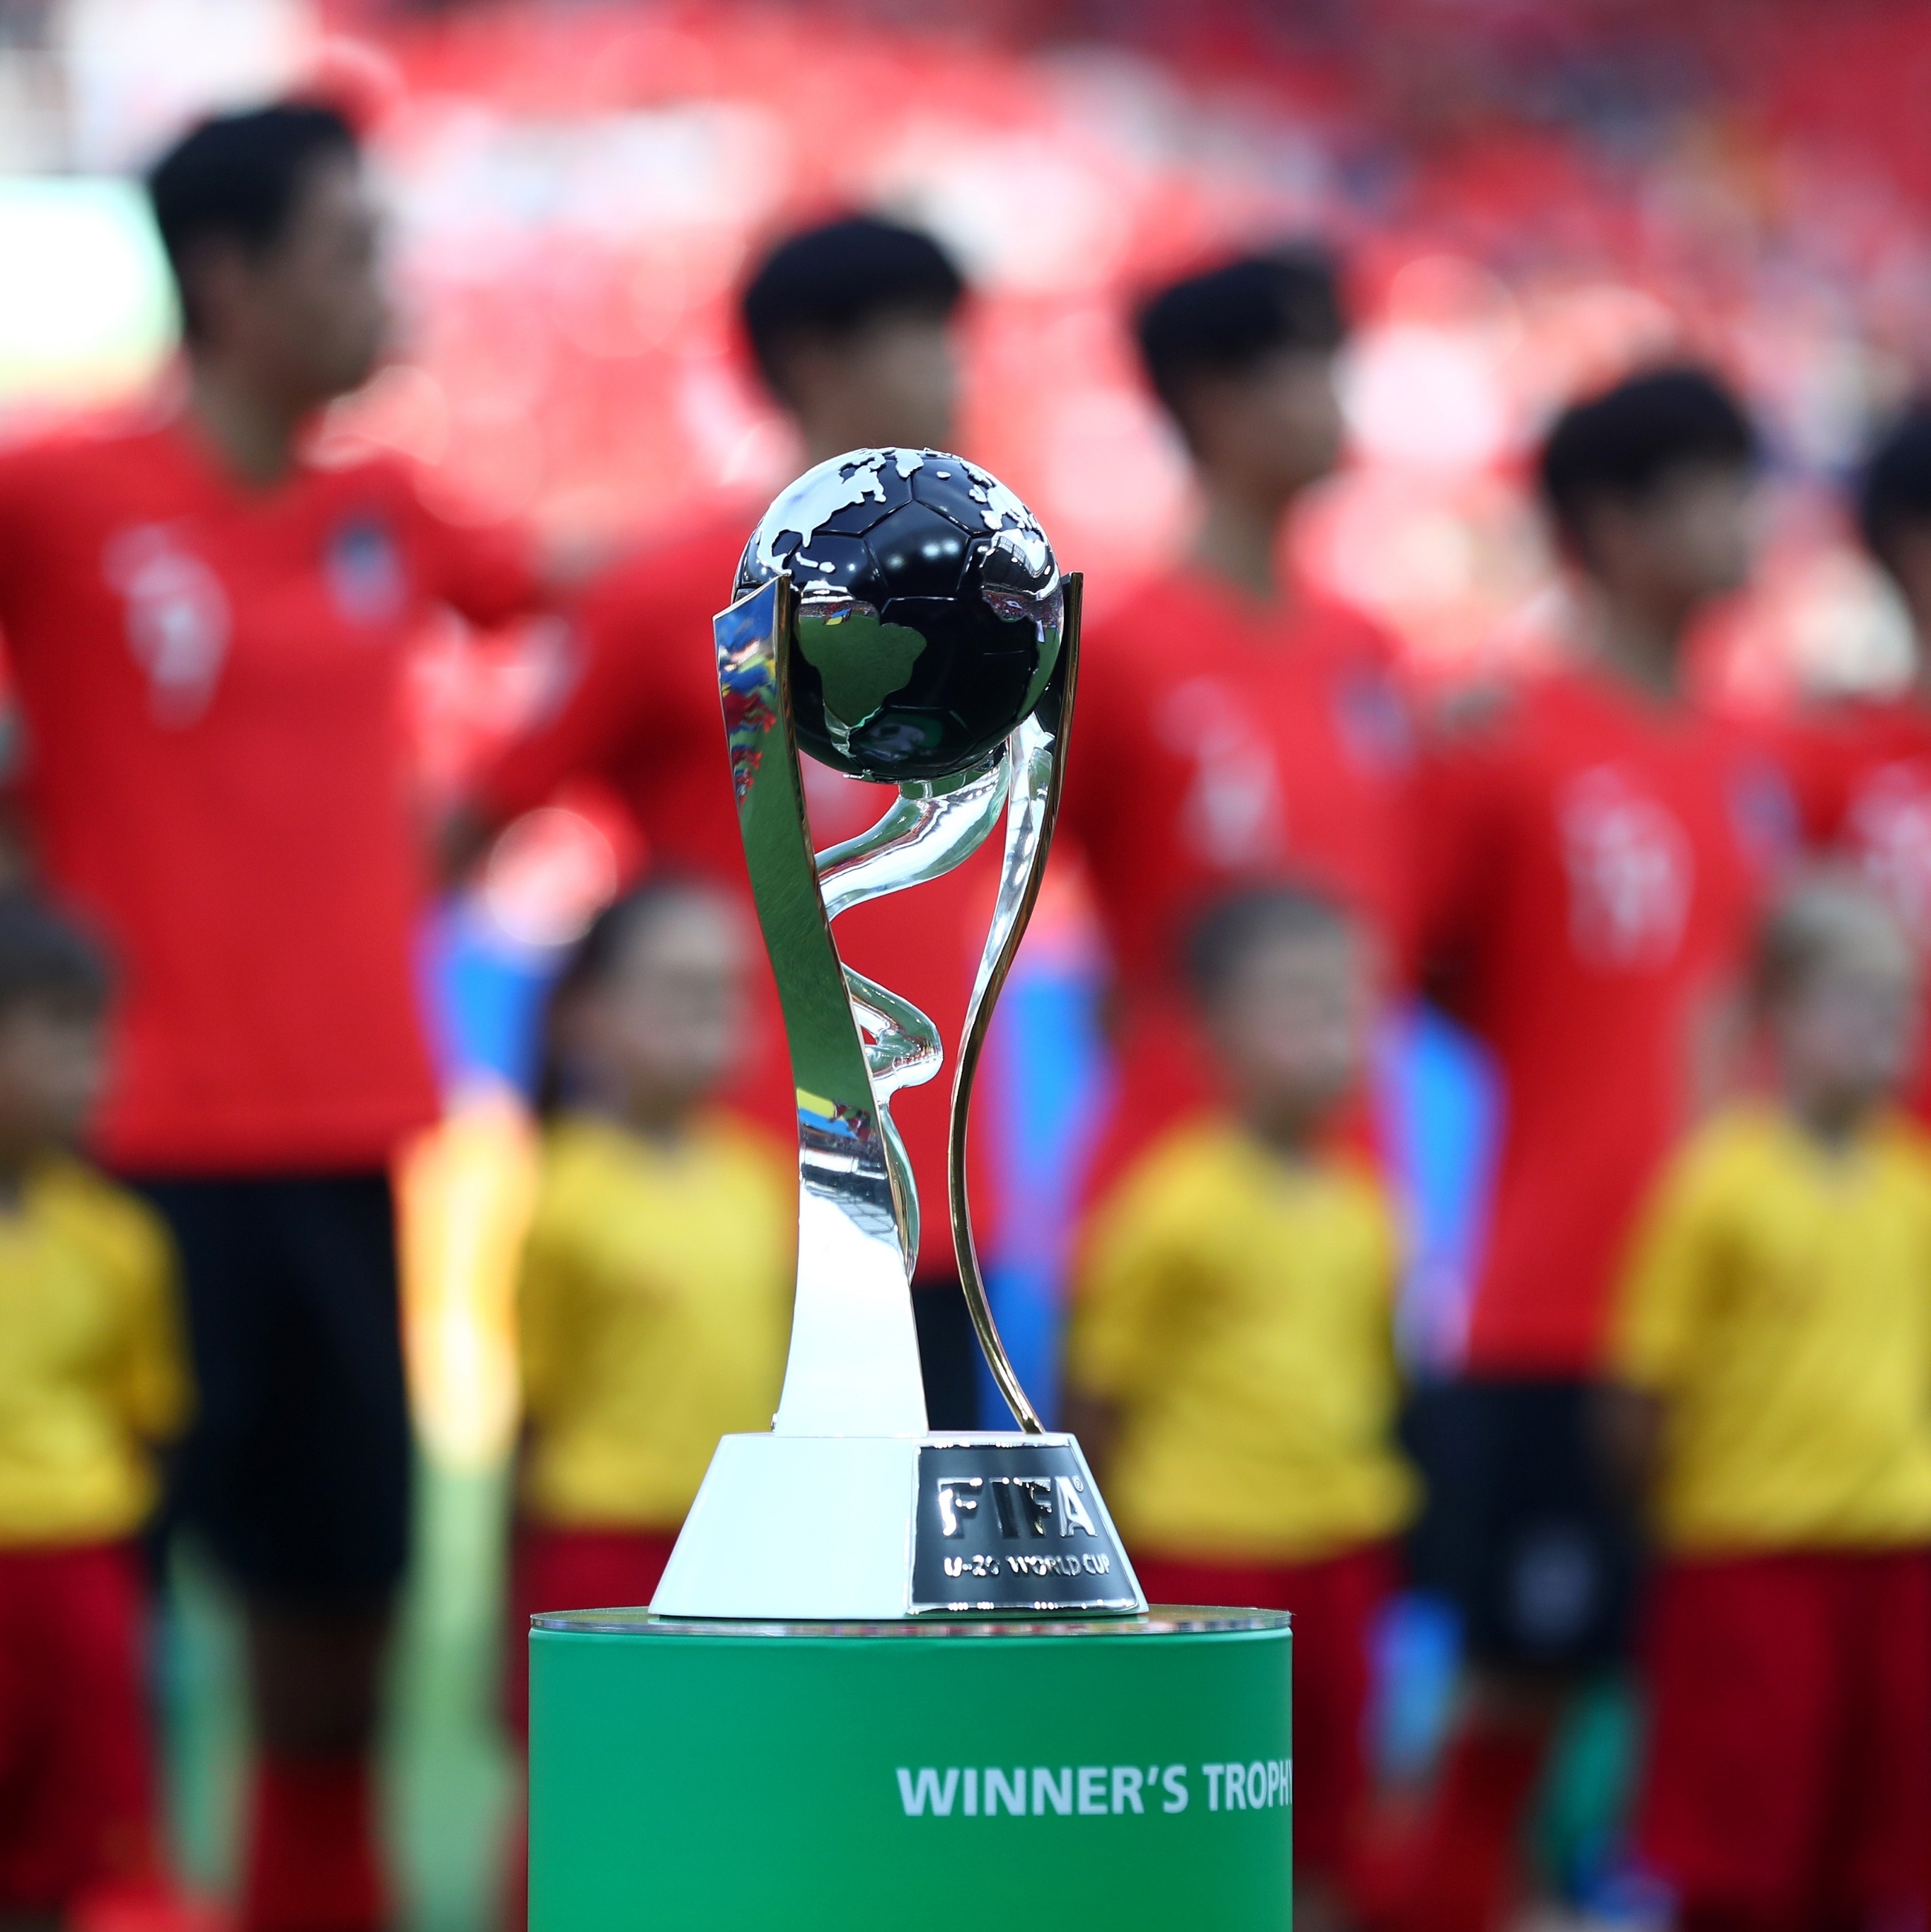 Fifa remove Indonésia como país-sede da Copa do Mundo Sub-20